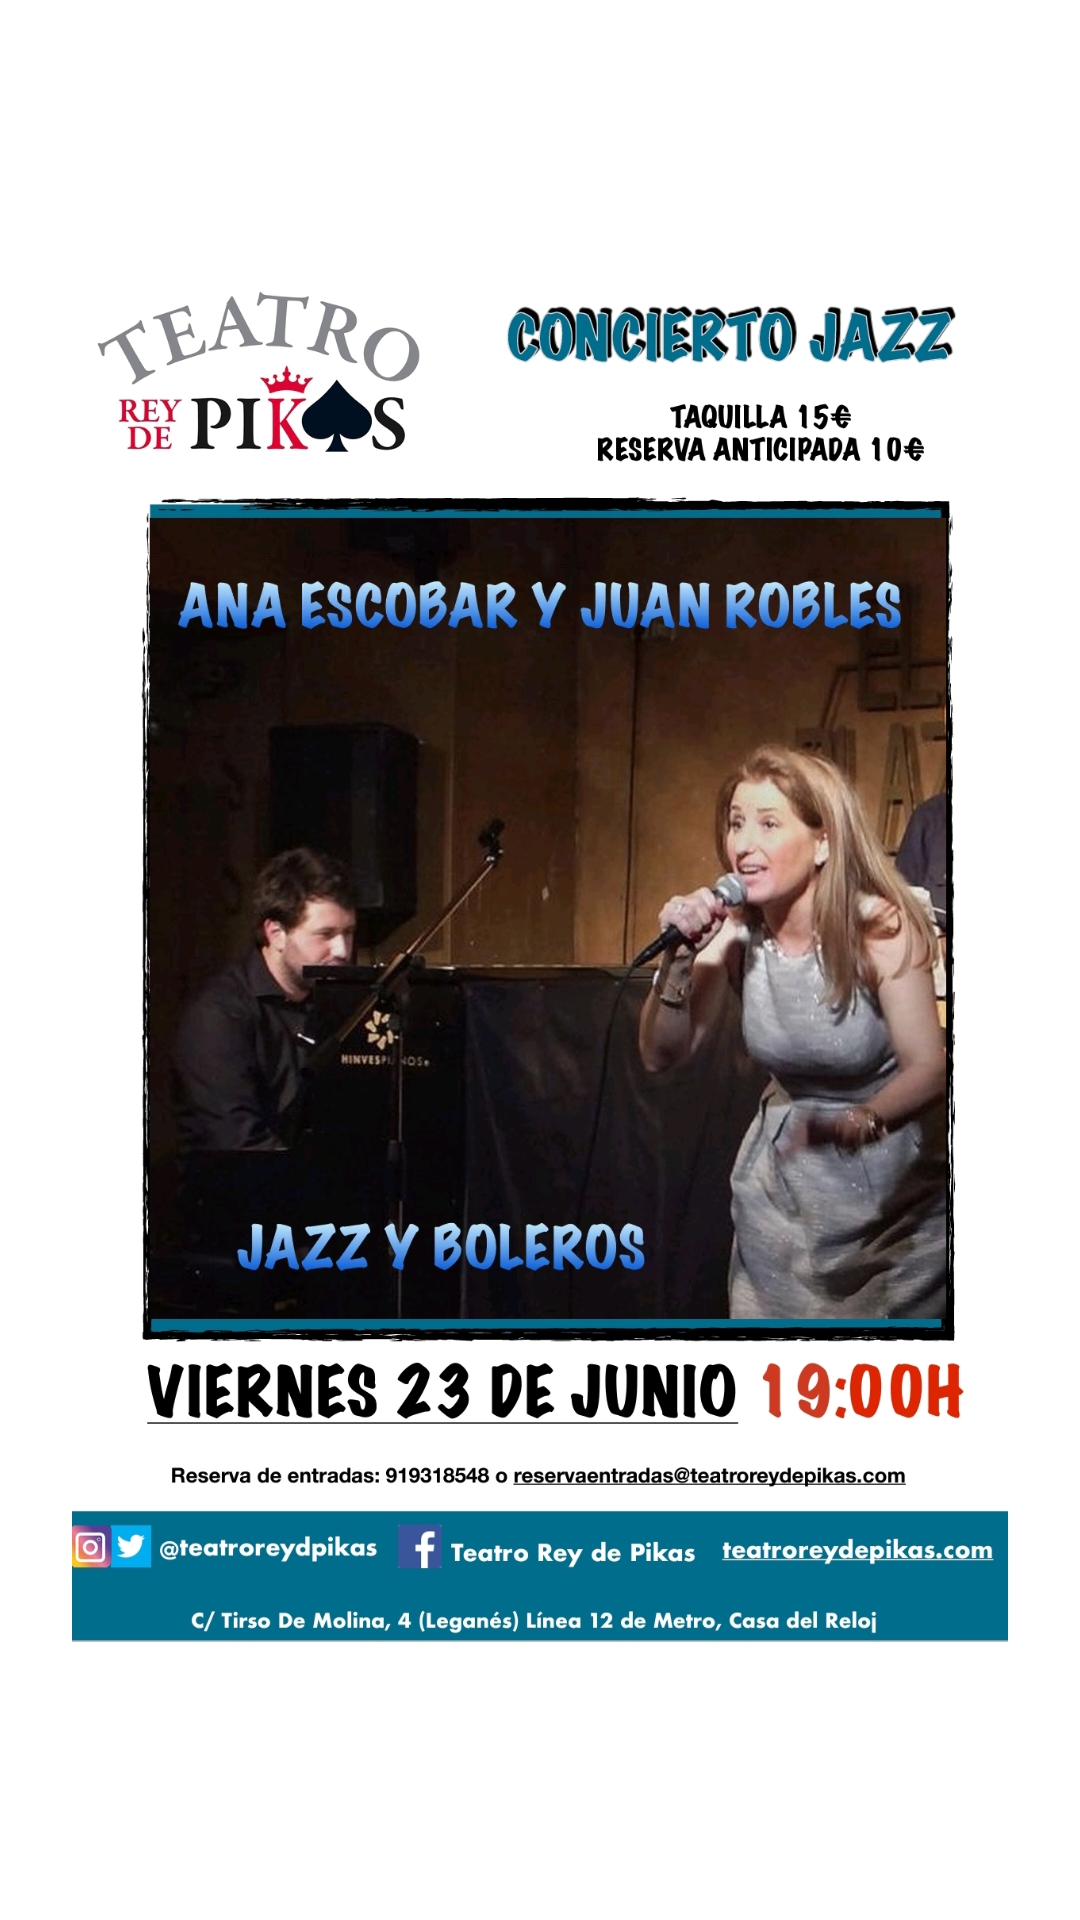 Concierto de Jazz y música latina ligera con Ana Ecobar y Juan Robles